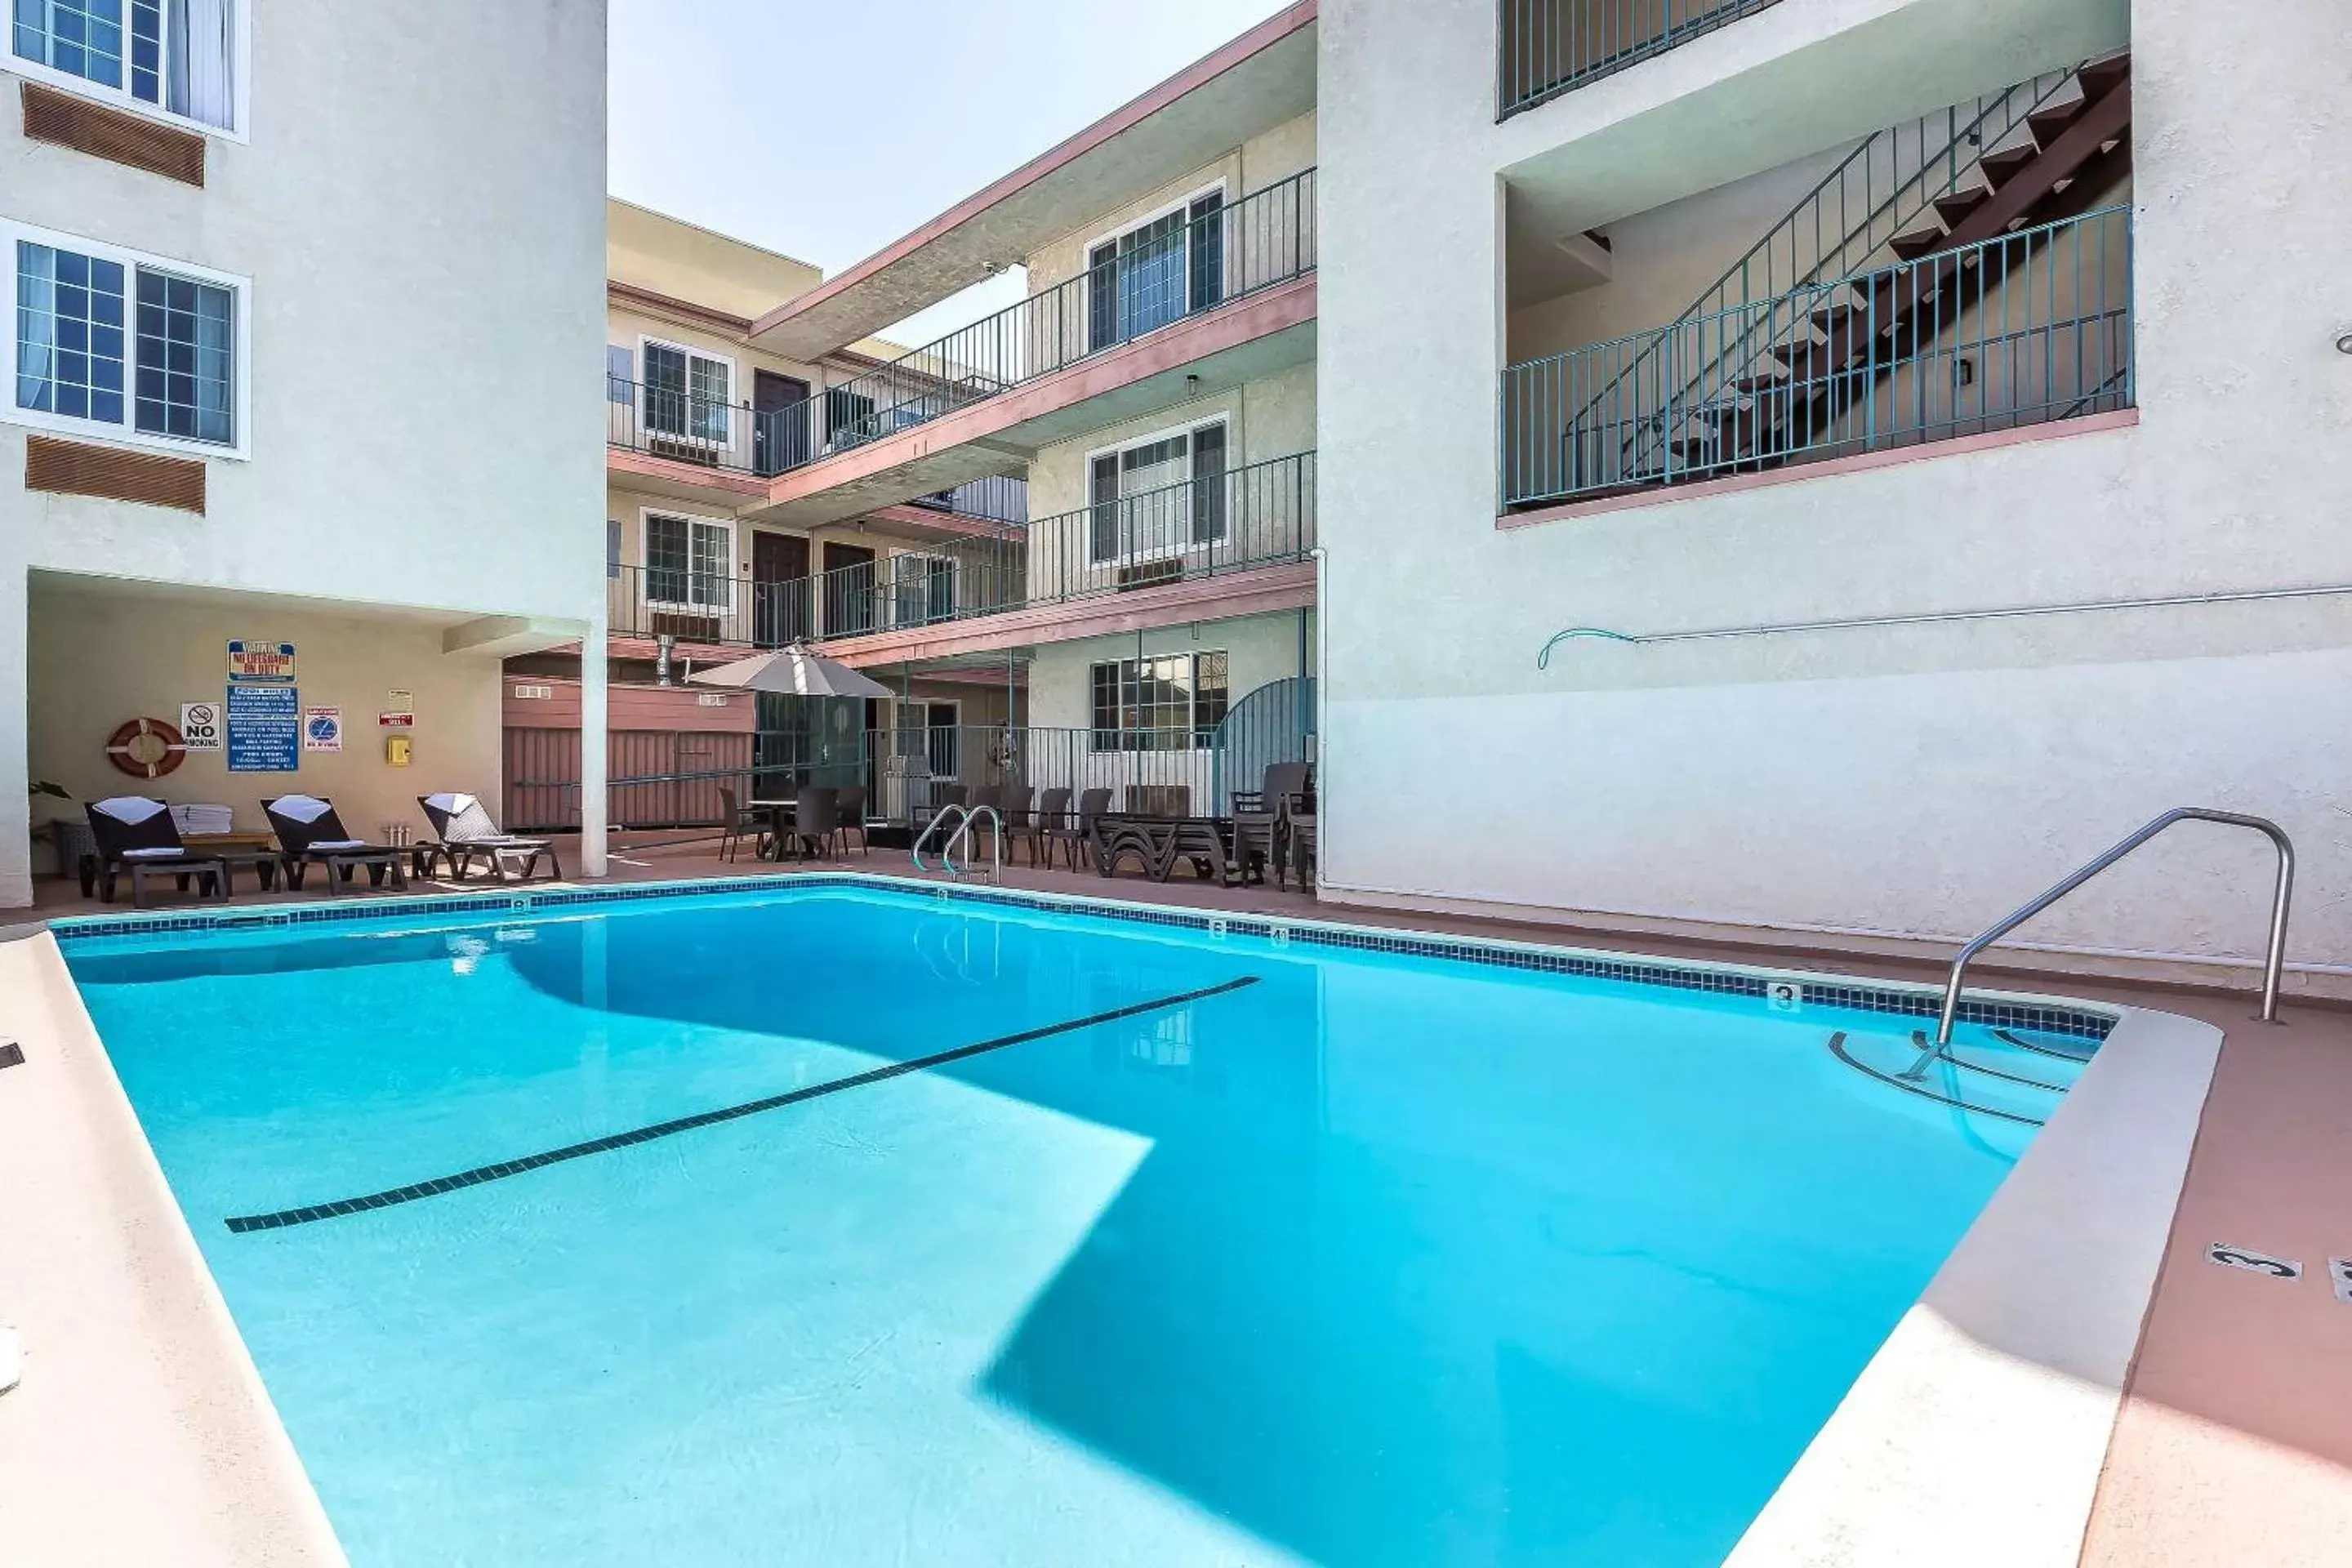 On site, Swimming Pool in Comfort Inn Santa Monica - West Los Angeles